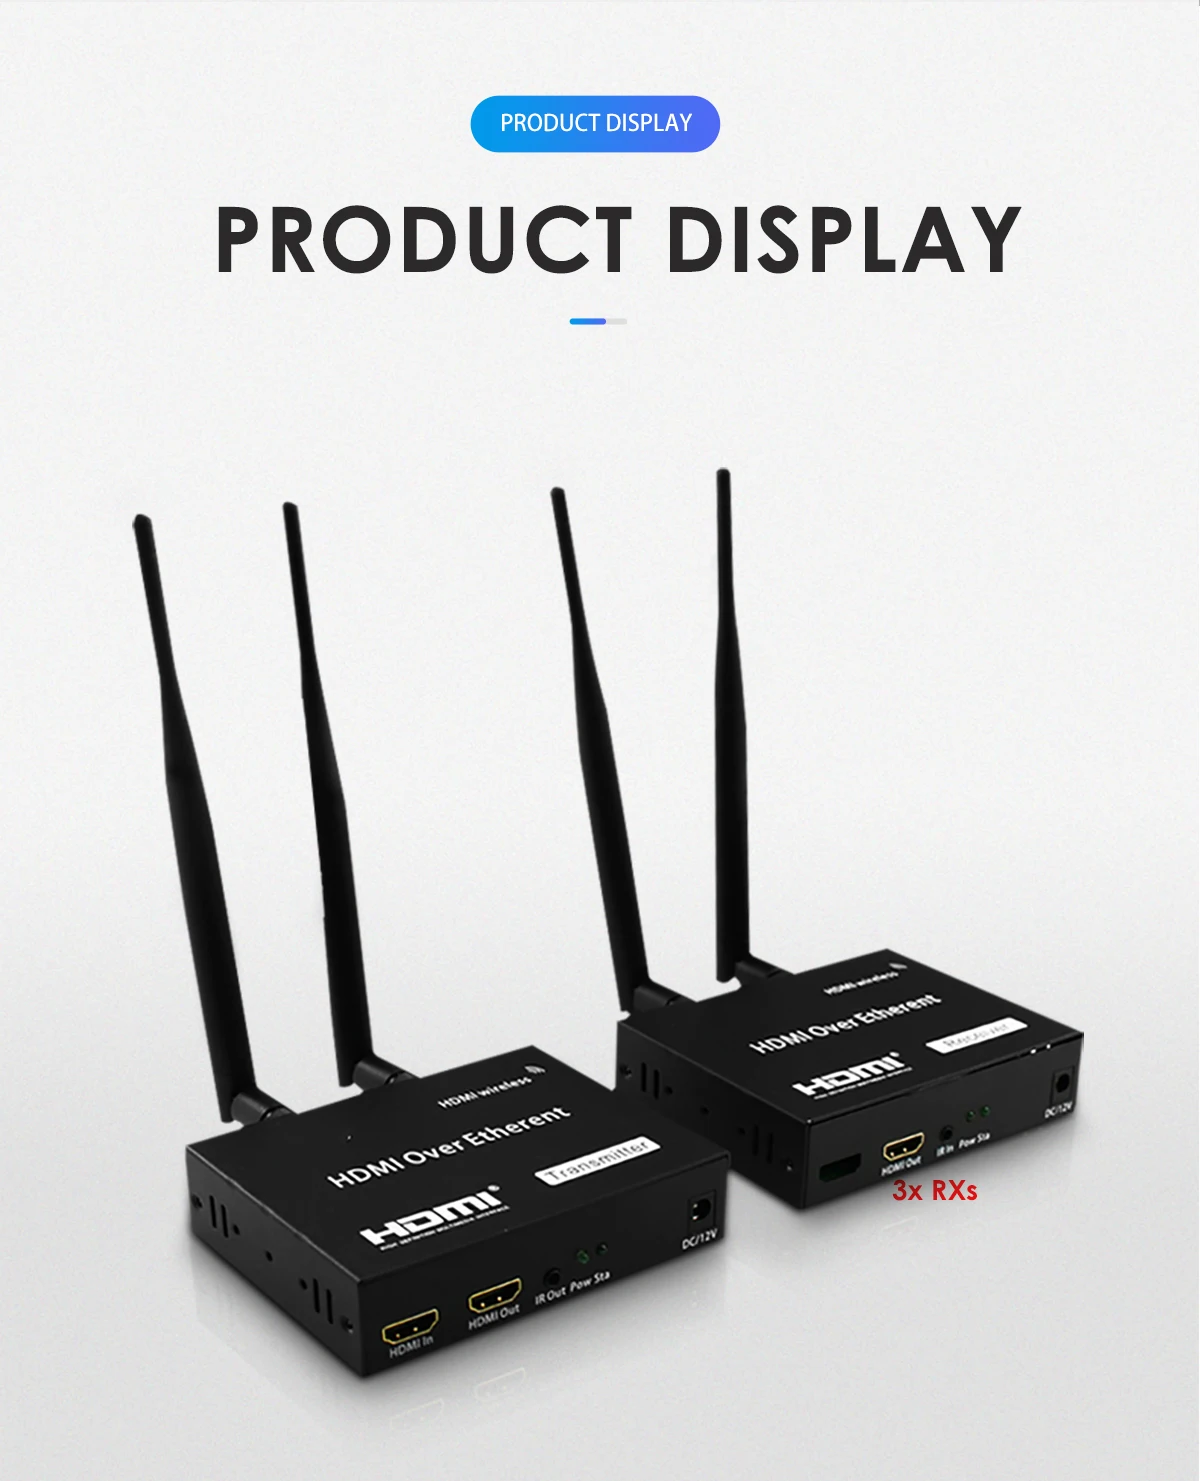 200M WiFi беспроводной HDMI 1080P УДЛИНИТЕЛЬ HDMI1.3 двухдиапазонный 2,4G/5G ИК пульт дистанционного управления с 1 передатчиком 3x приемниками HDCP 1,2